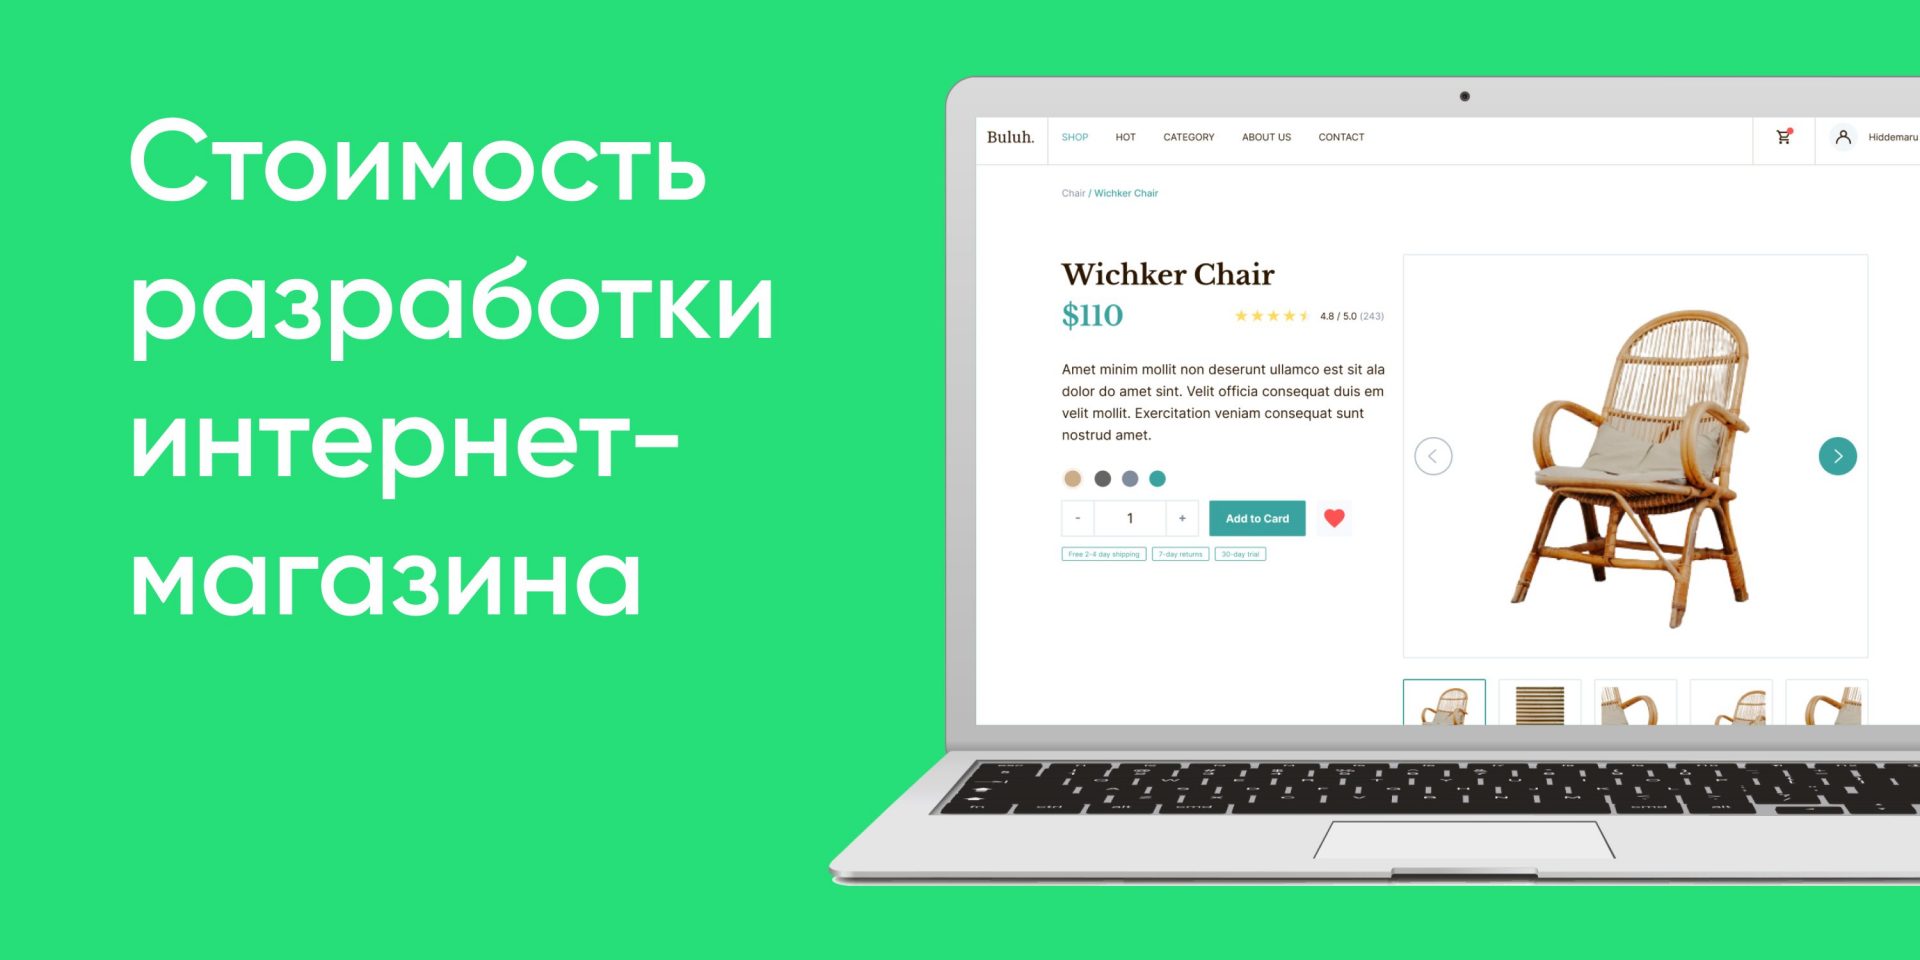 Анализ и разработка контент-стратегии Вконтакте 12